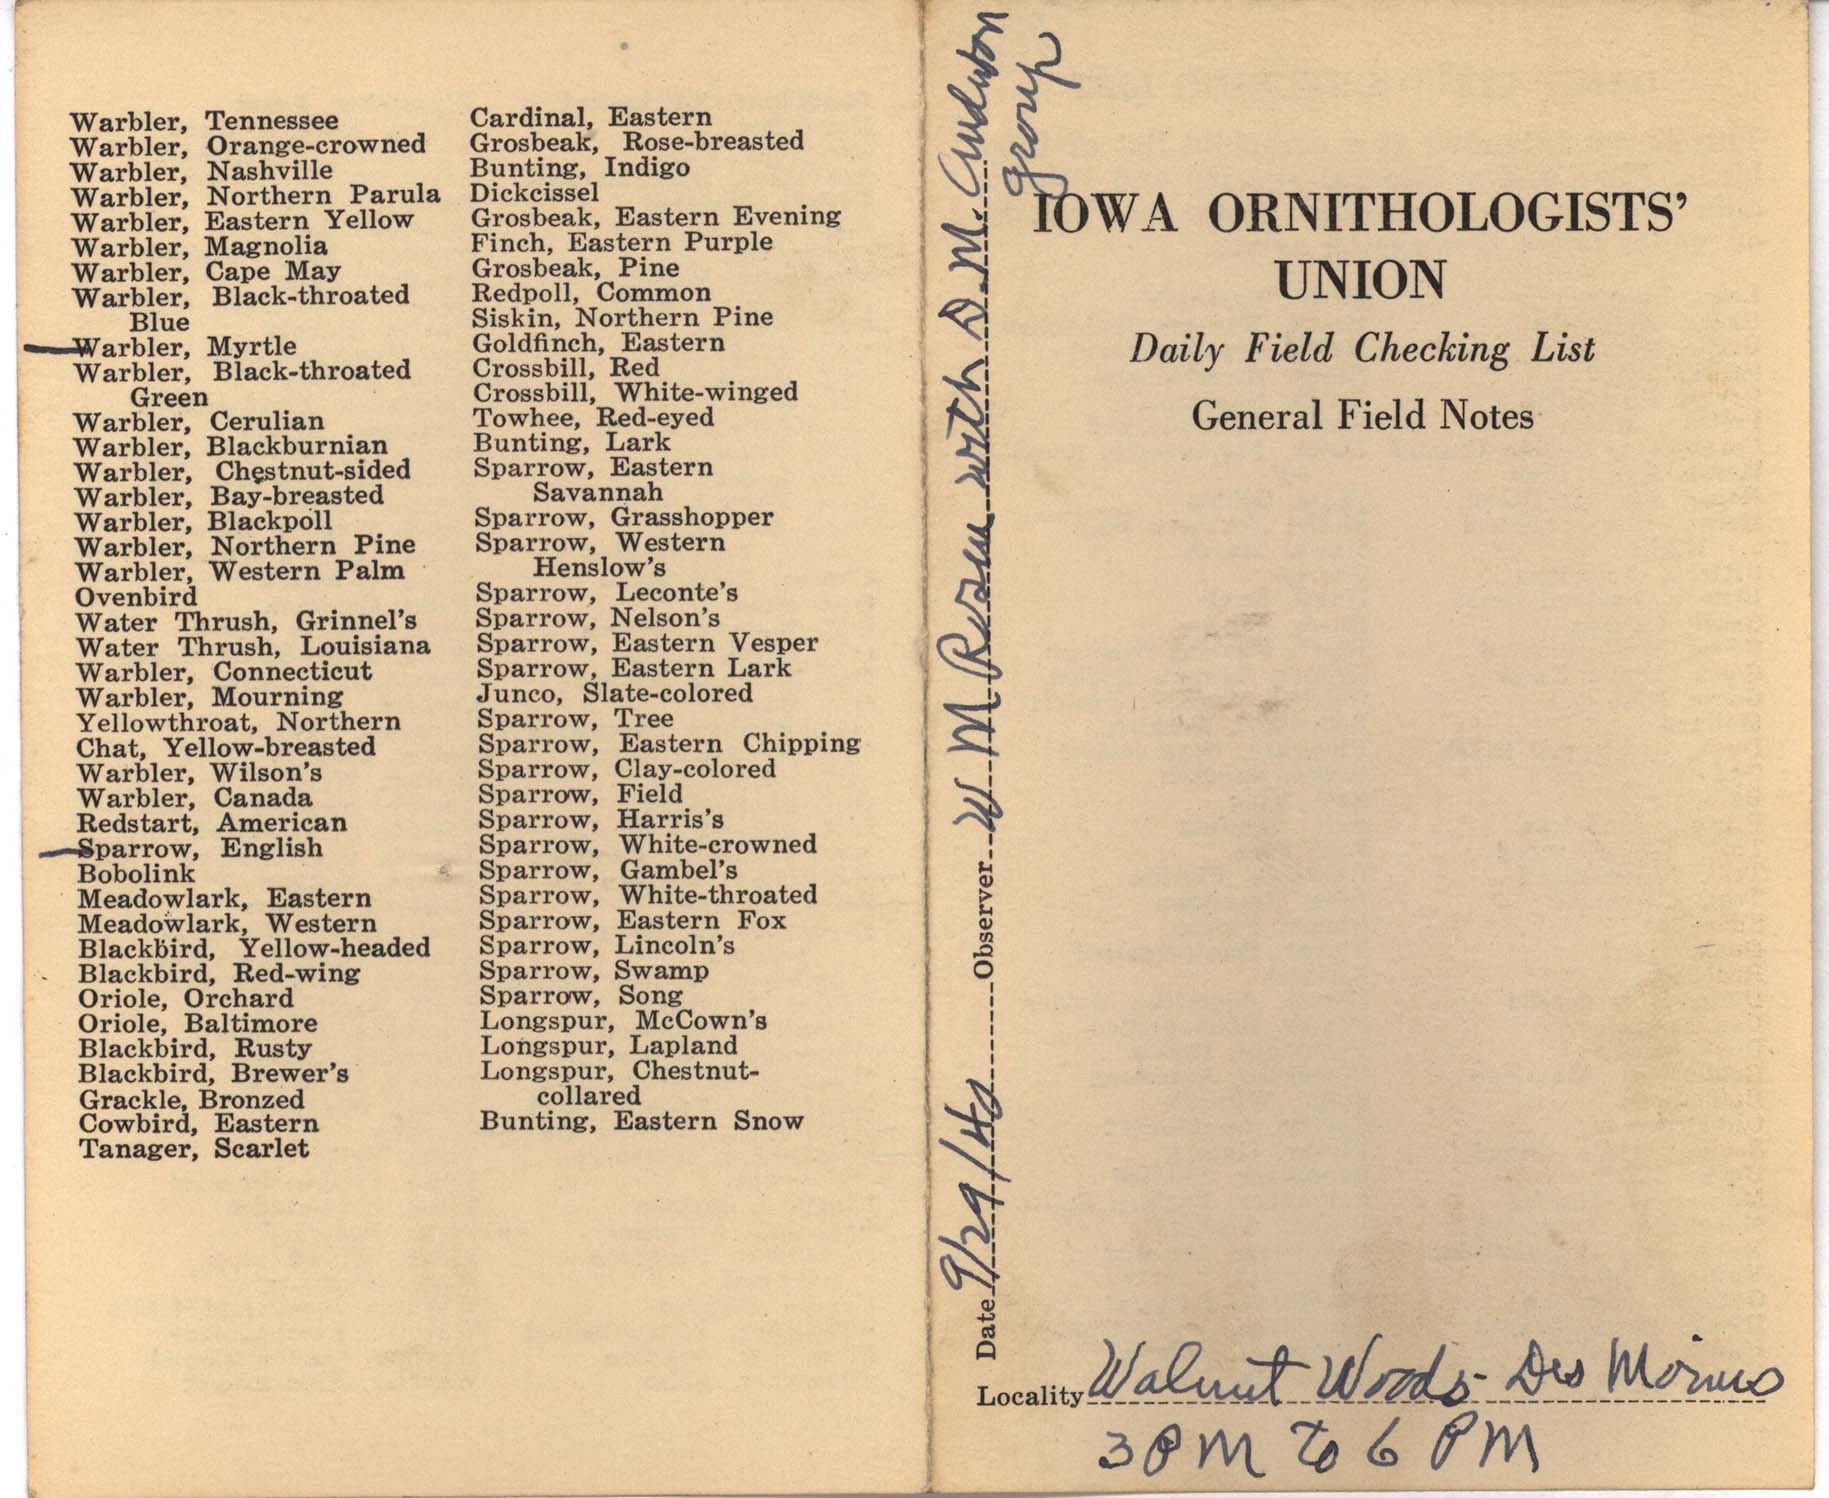 Daily field checking list by Walter Rosene, September 29, 1940